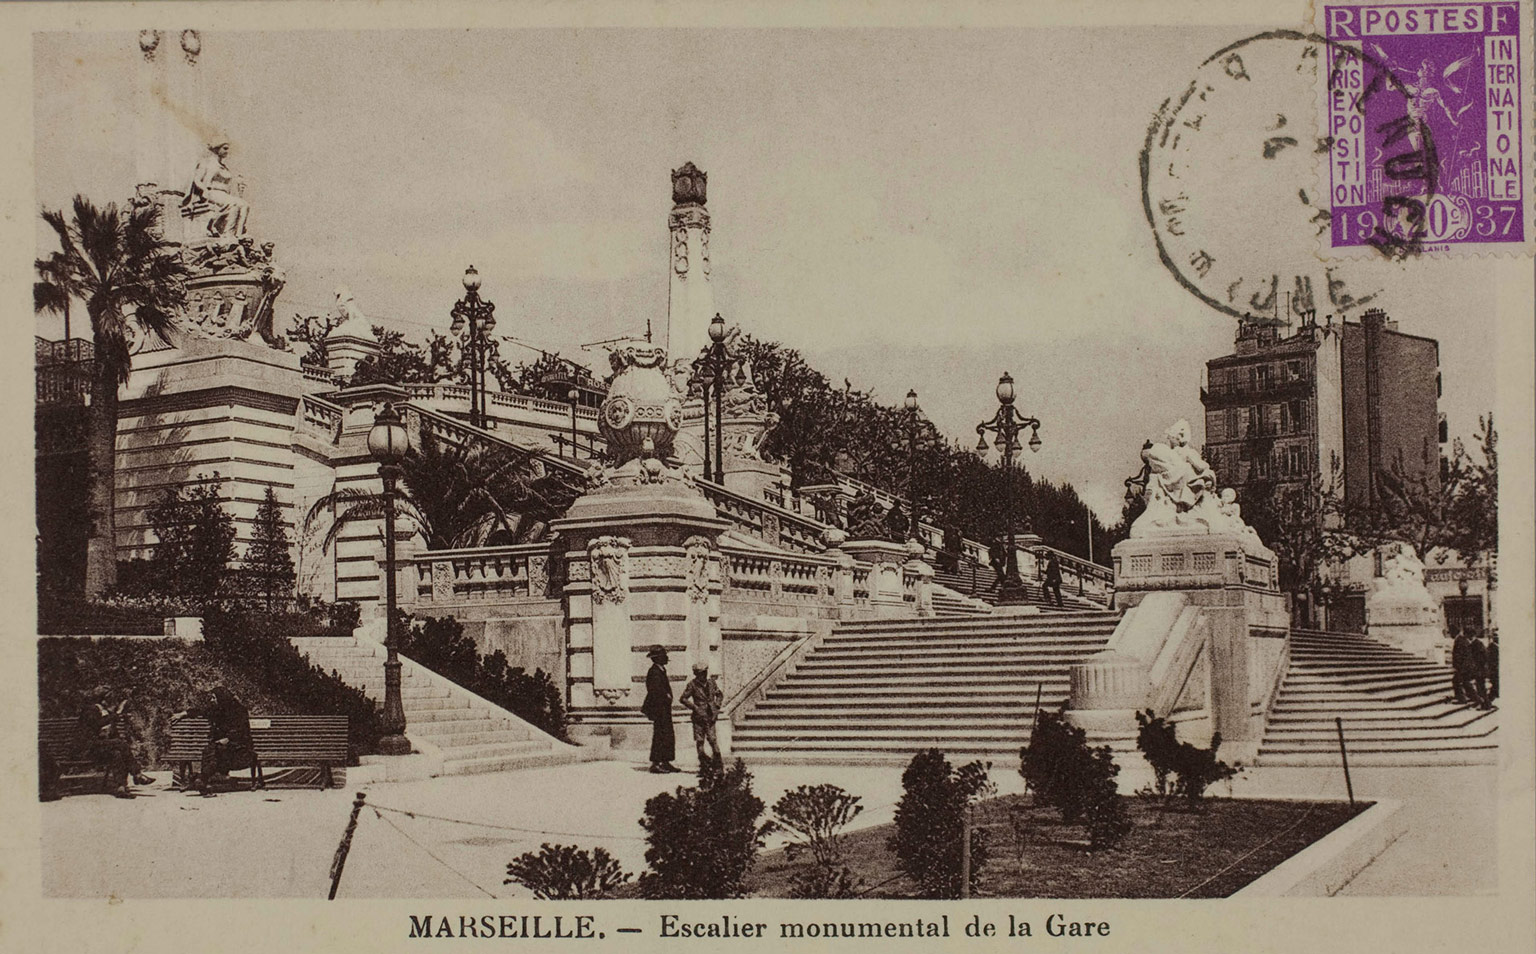 Escalier de la gare St Charles carte postale - anonyme - 1937 coll. Musée d'Histoire de Marseille